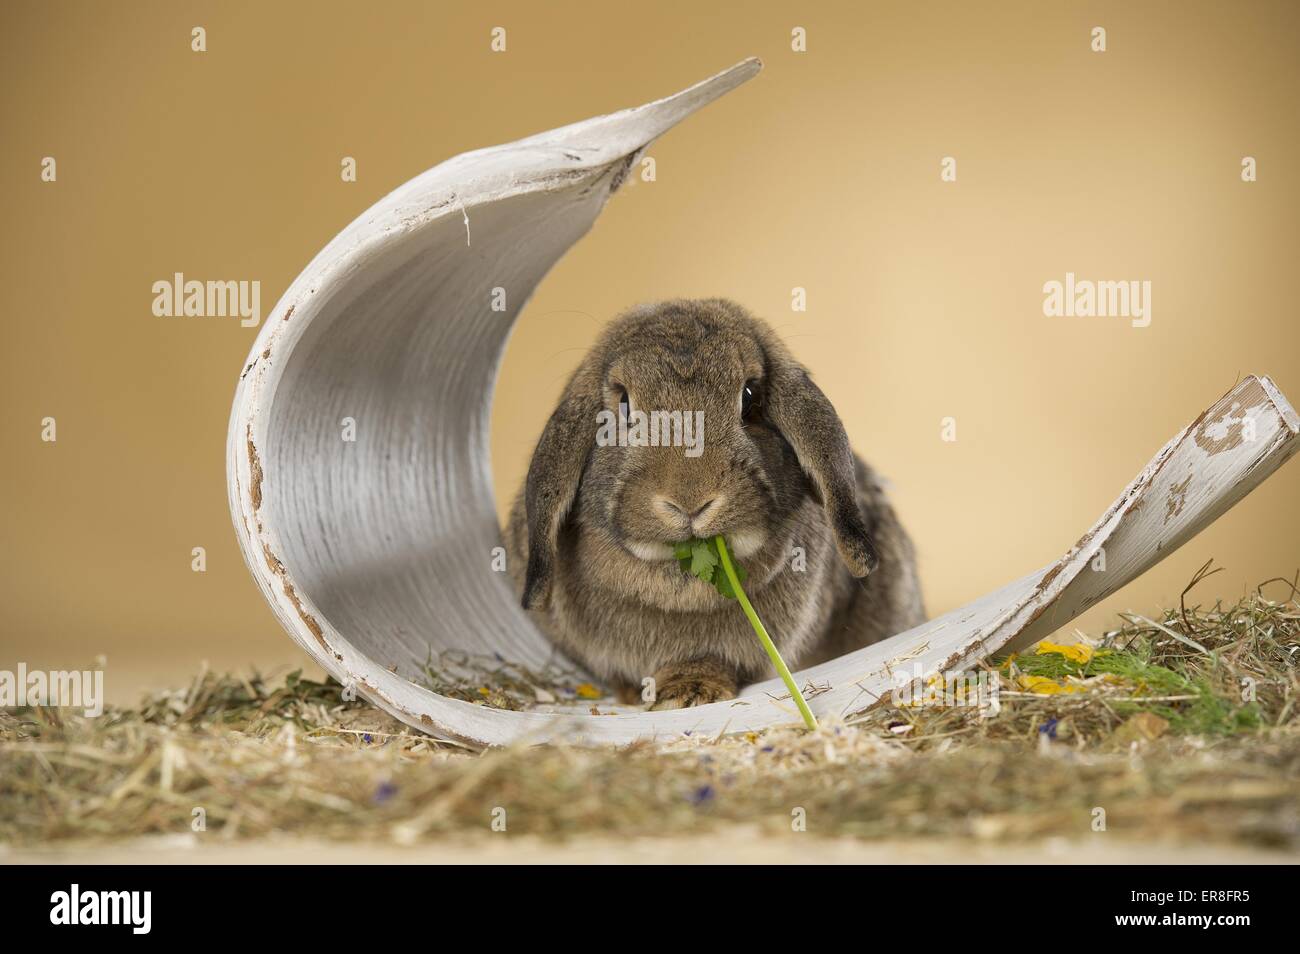 Lop-eared rabbit Banque D'Images